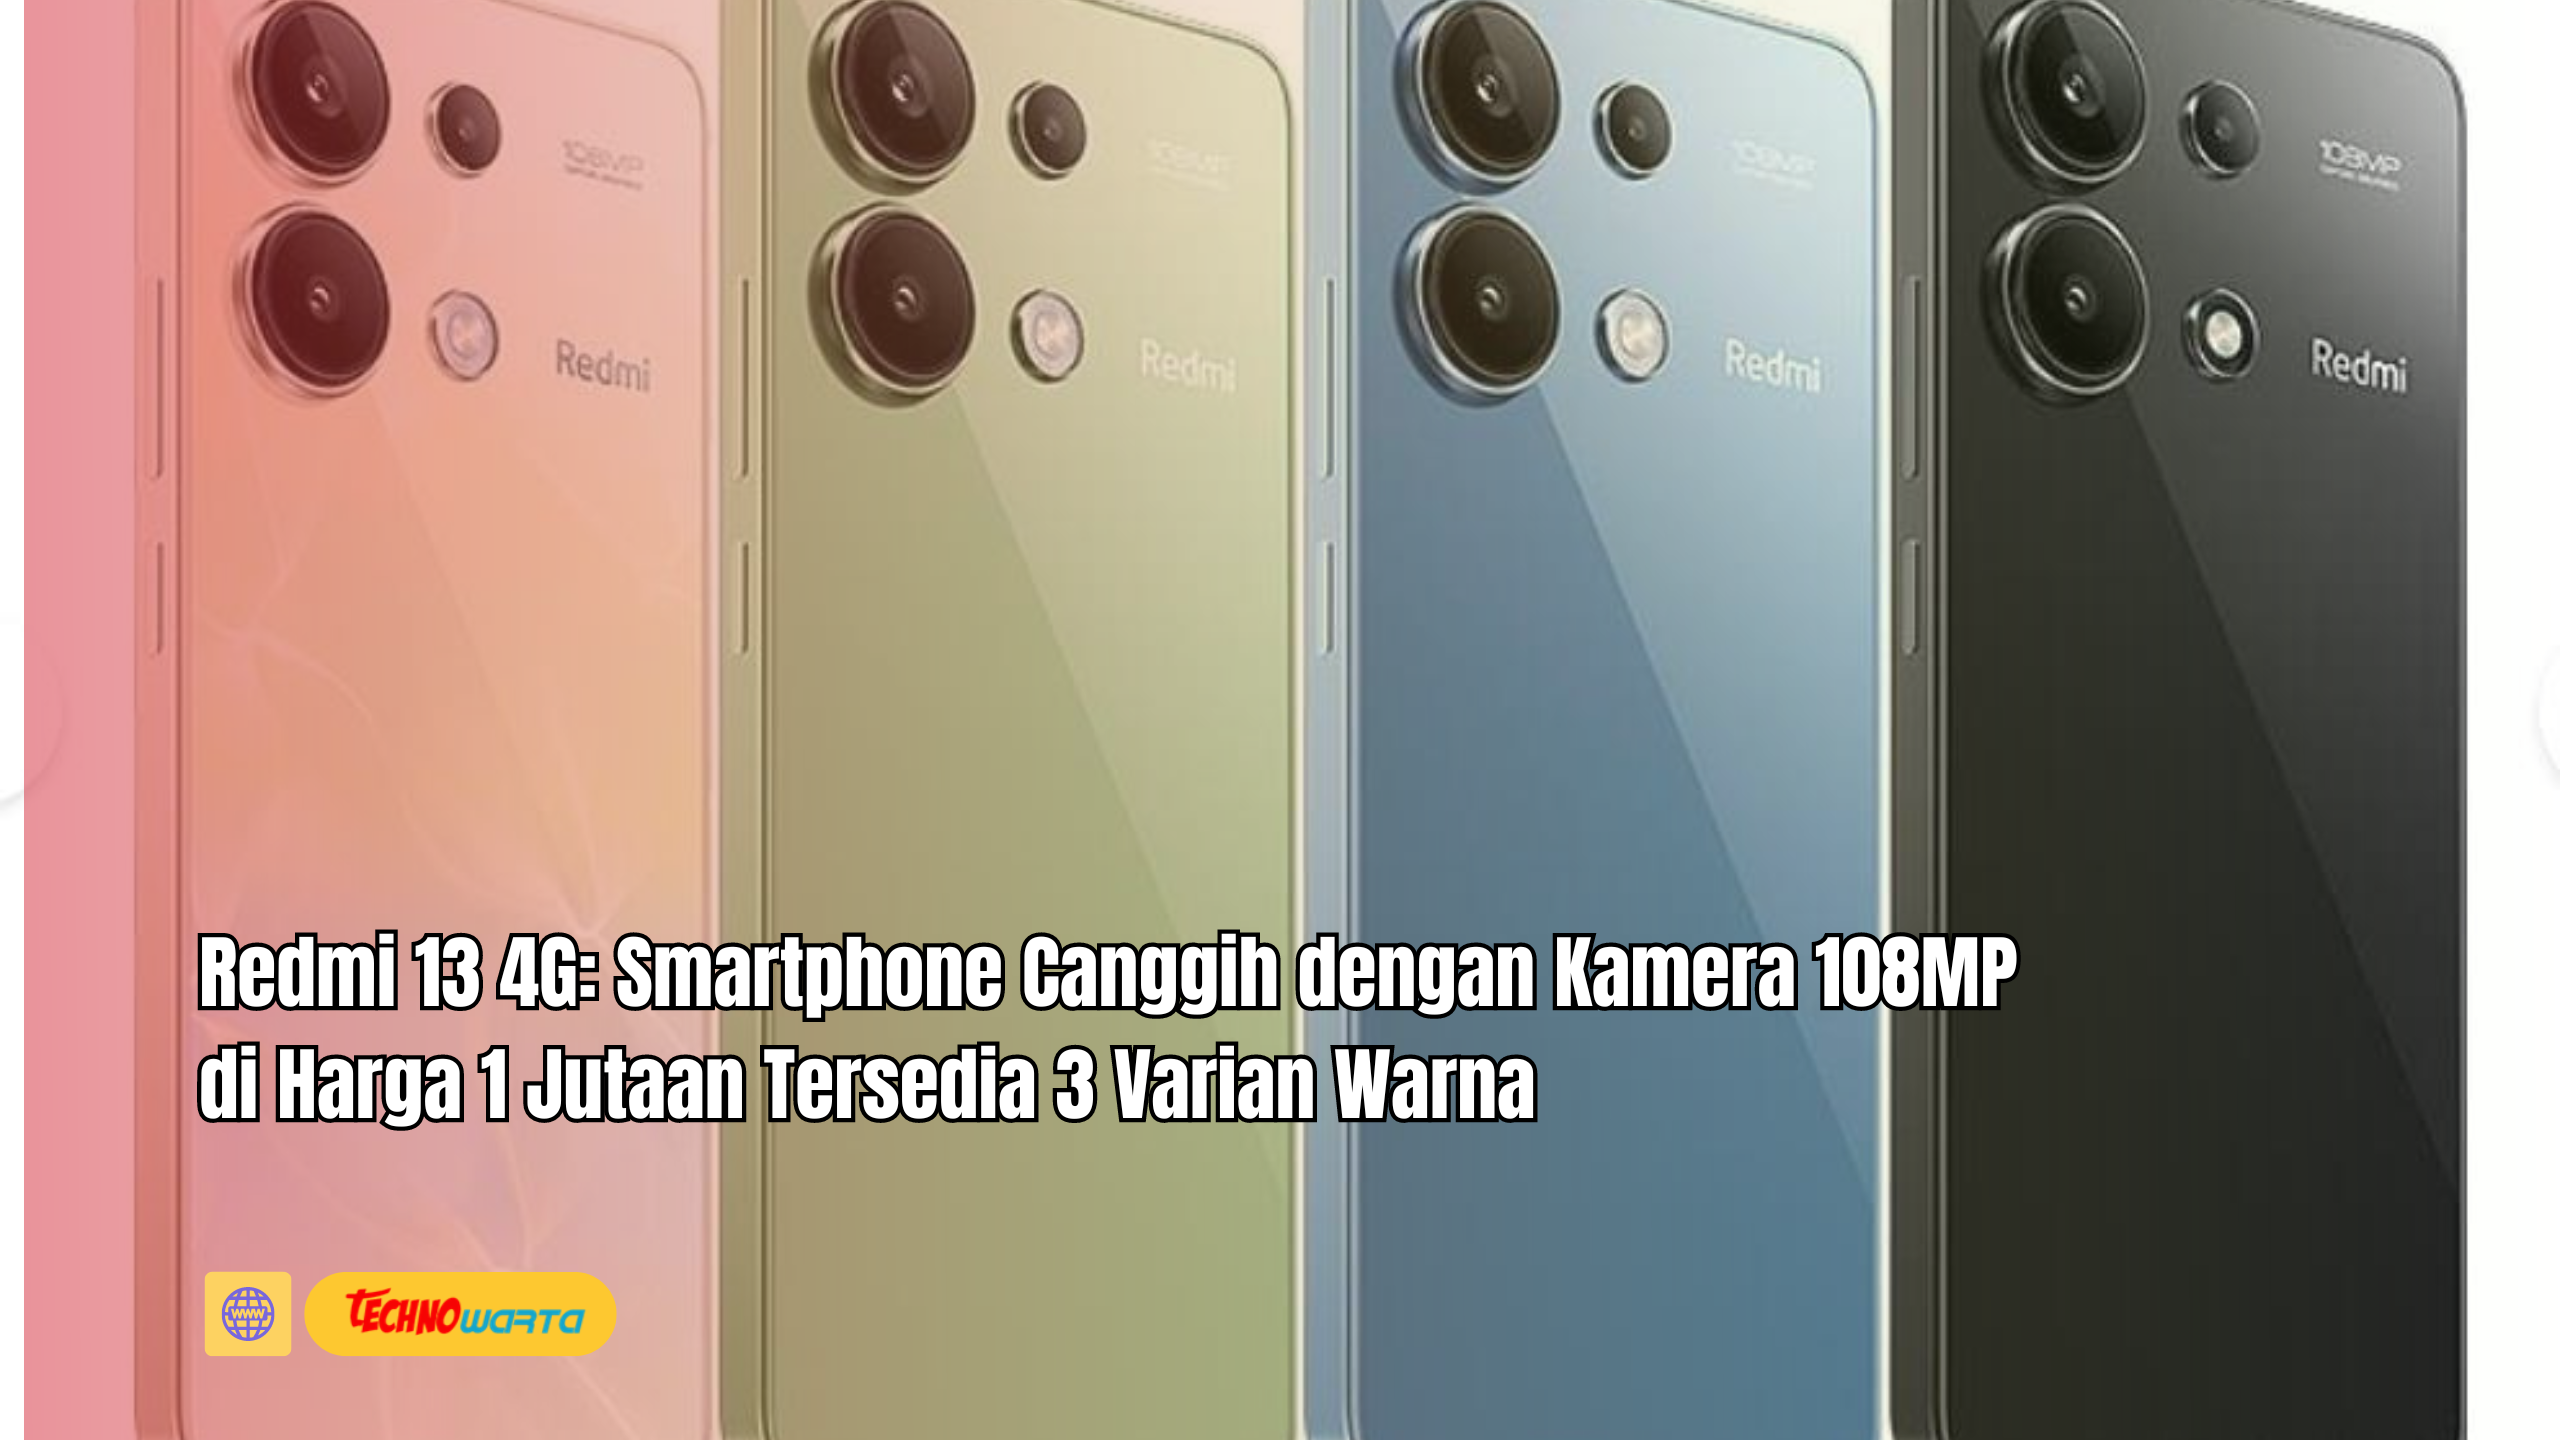 Redmi 13 4G, Smartphone, Canggih, Kamera 108MP, Harga 1 Jutaan, Tersedia, 3 Varian Warna